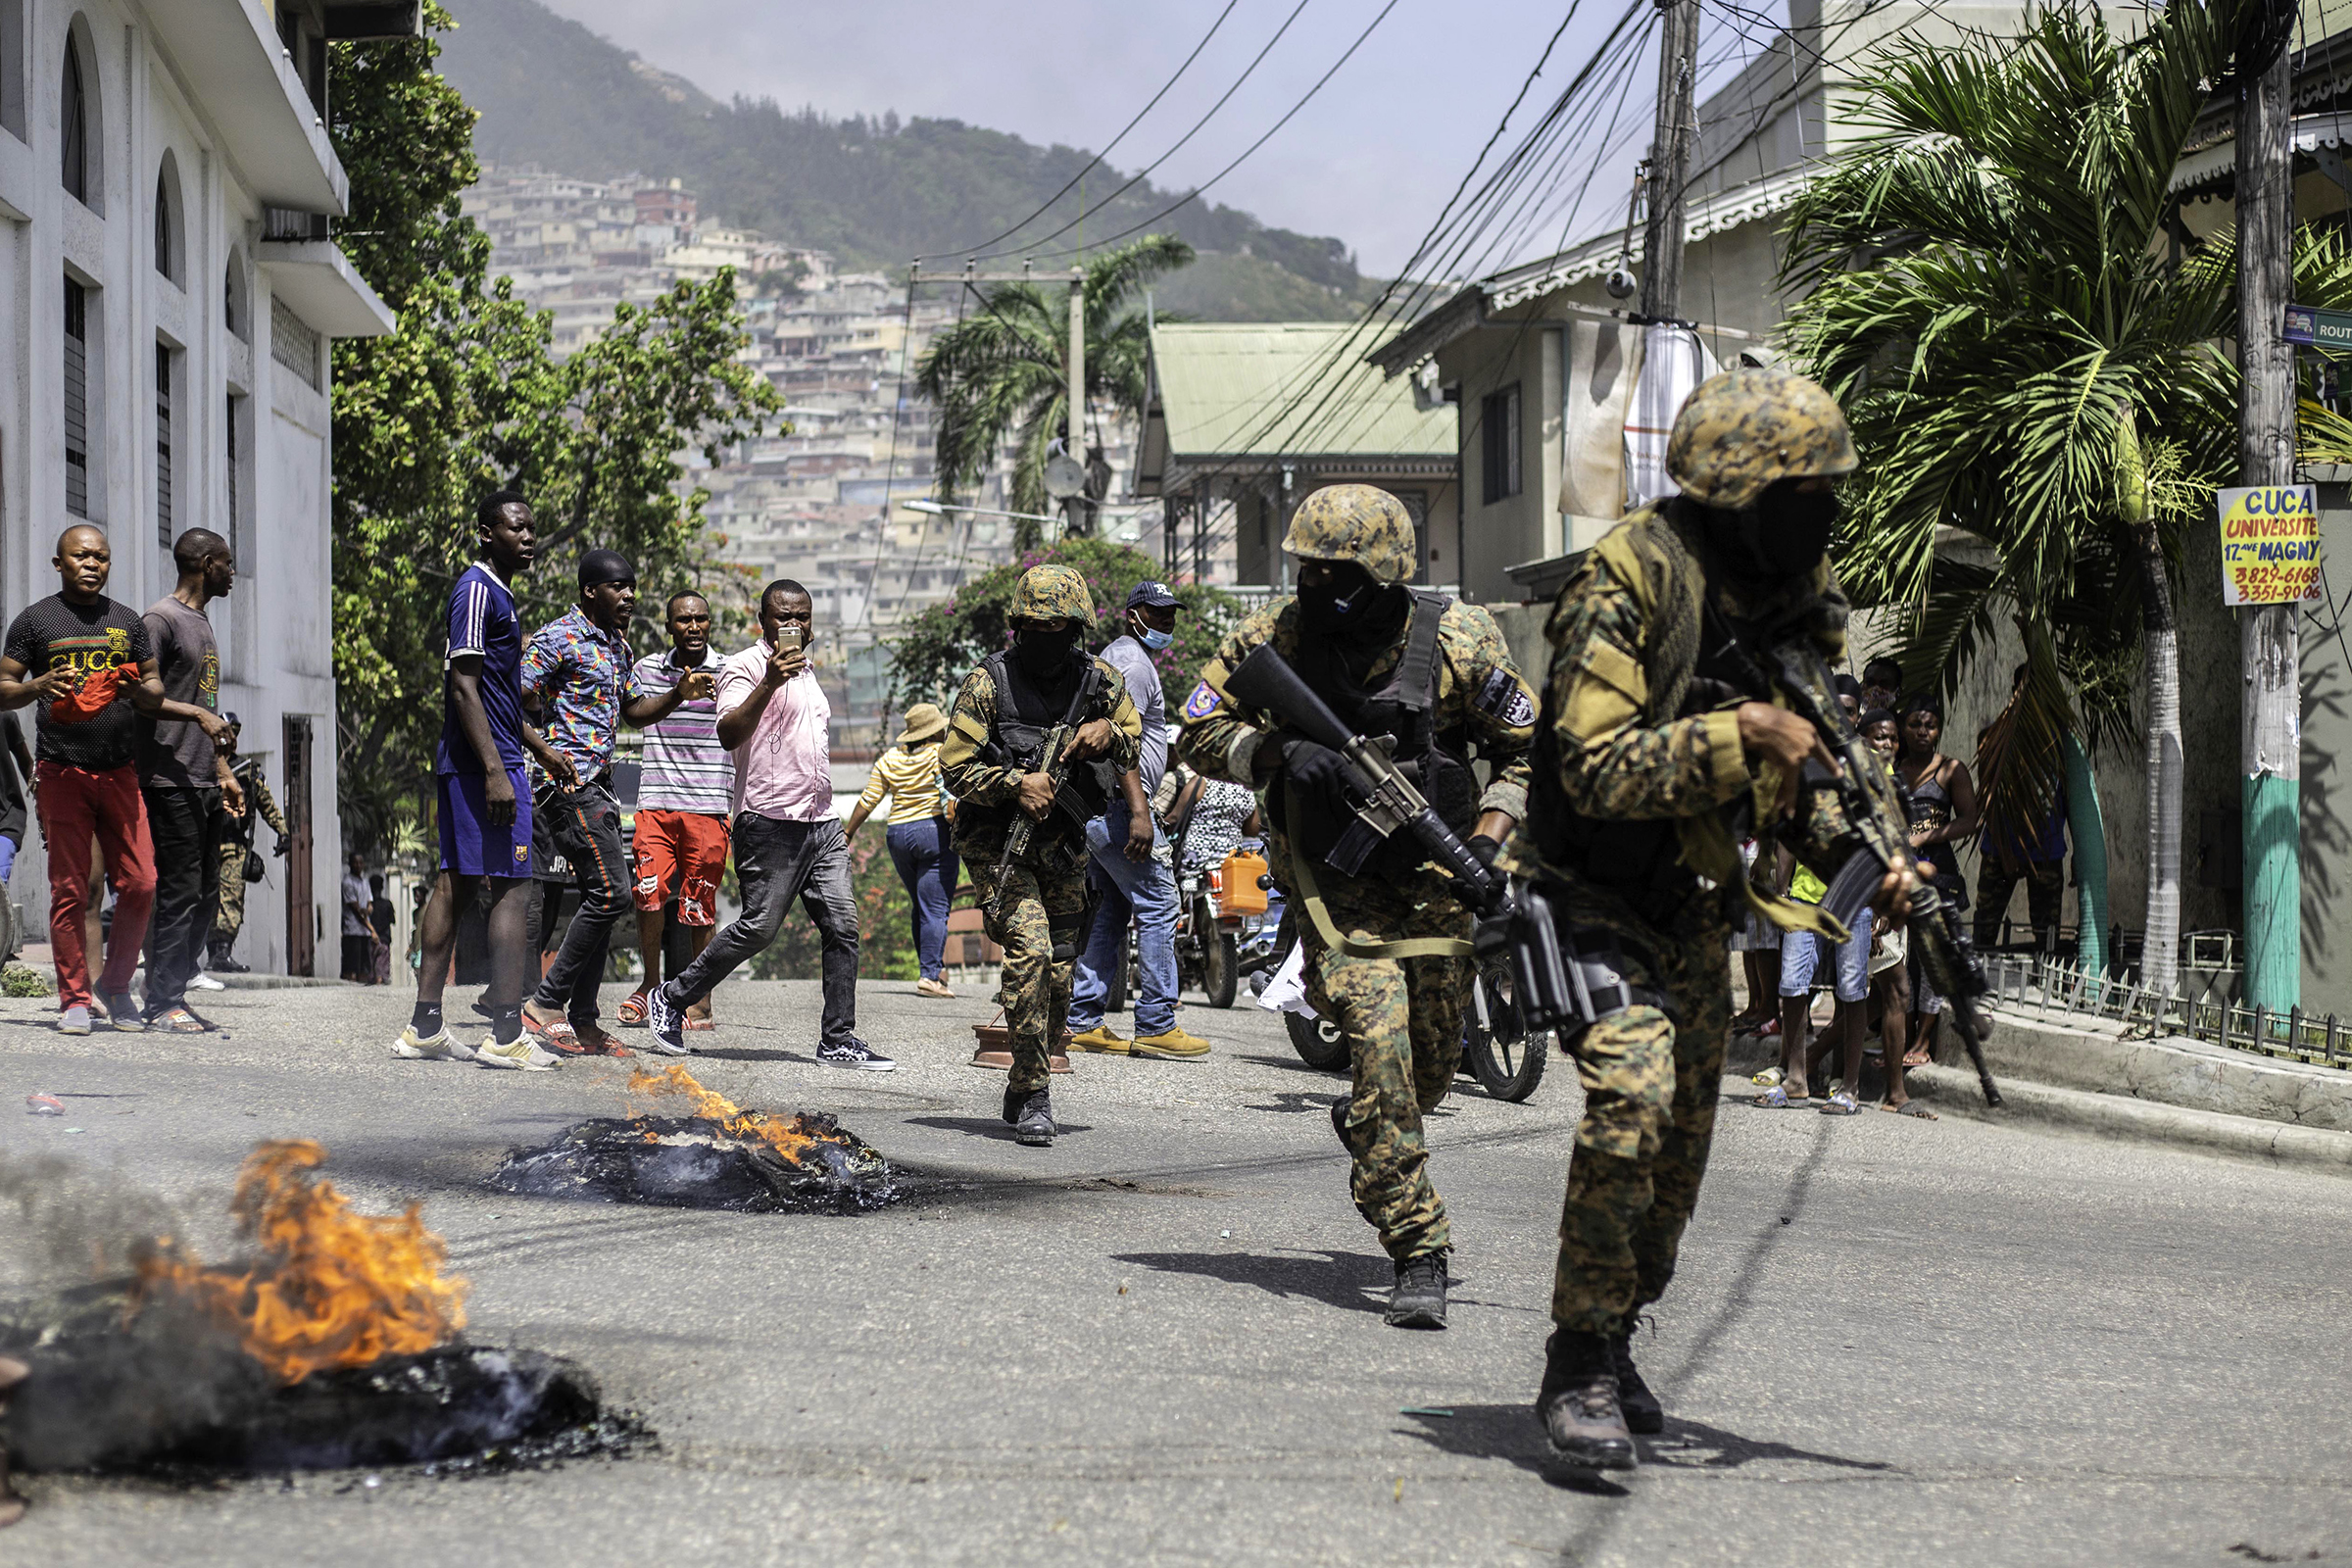 Haiti's main problems